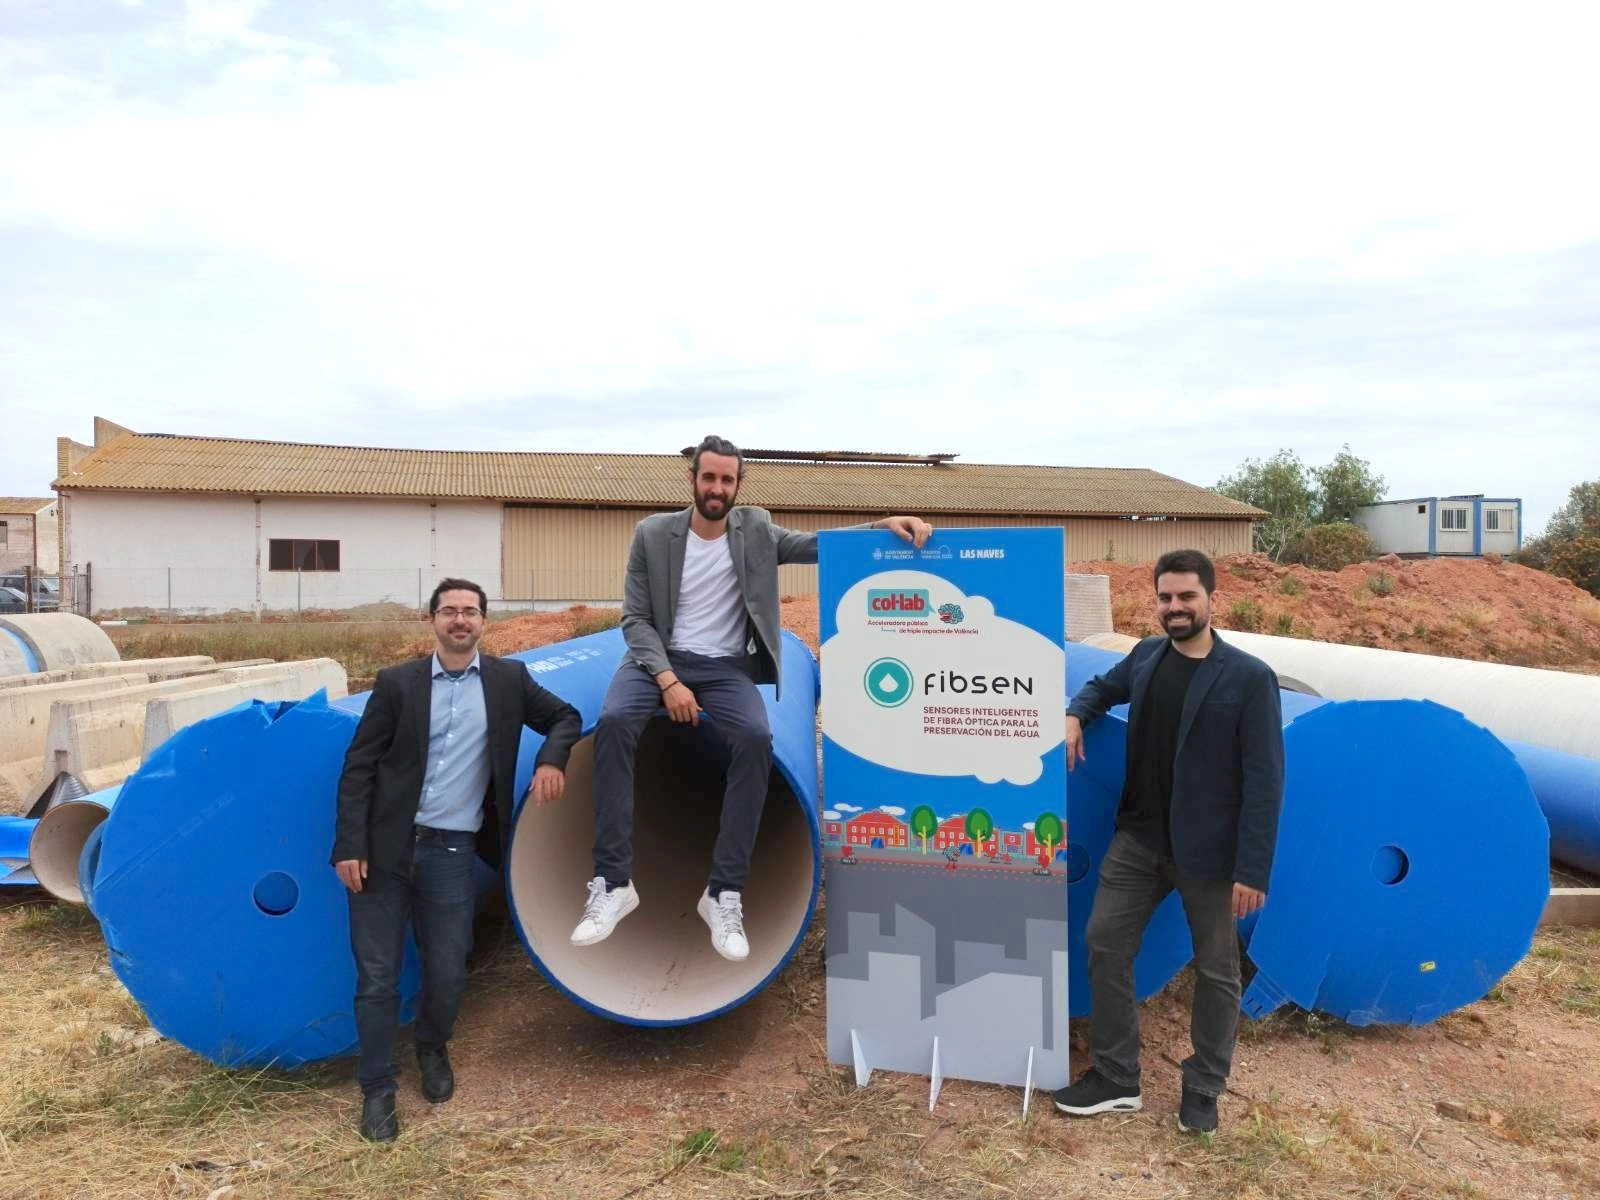 Fotografia dels creadors de Fisben la startup per a la gestió inteligent de l'aigua